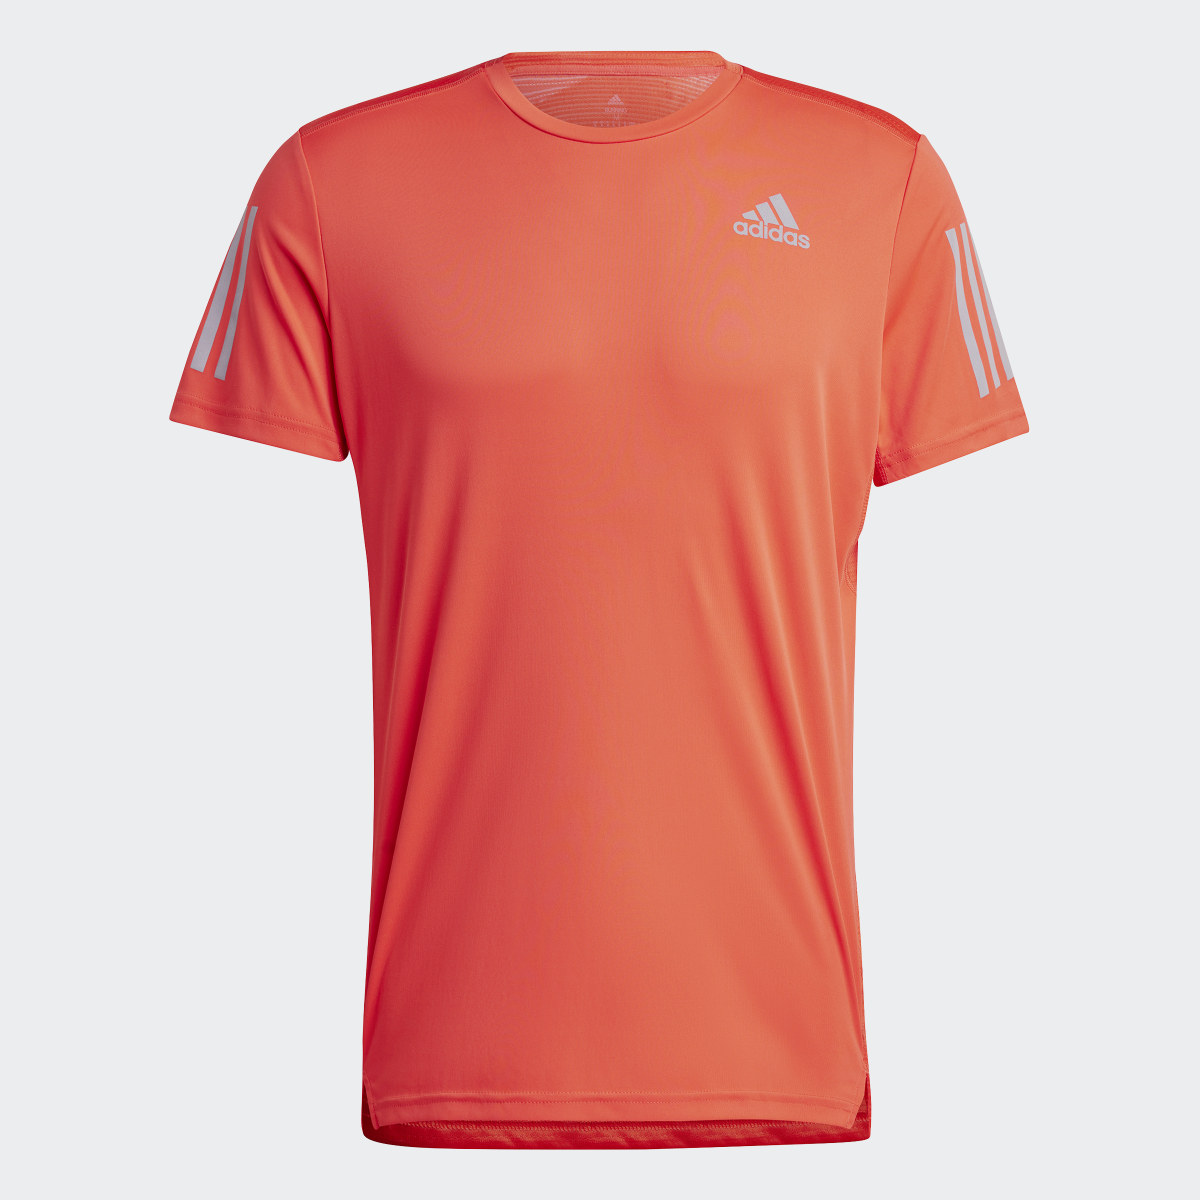 Adidas Own the Run T-Shirt. 5